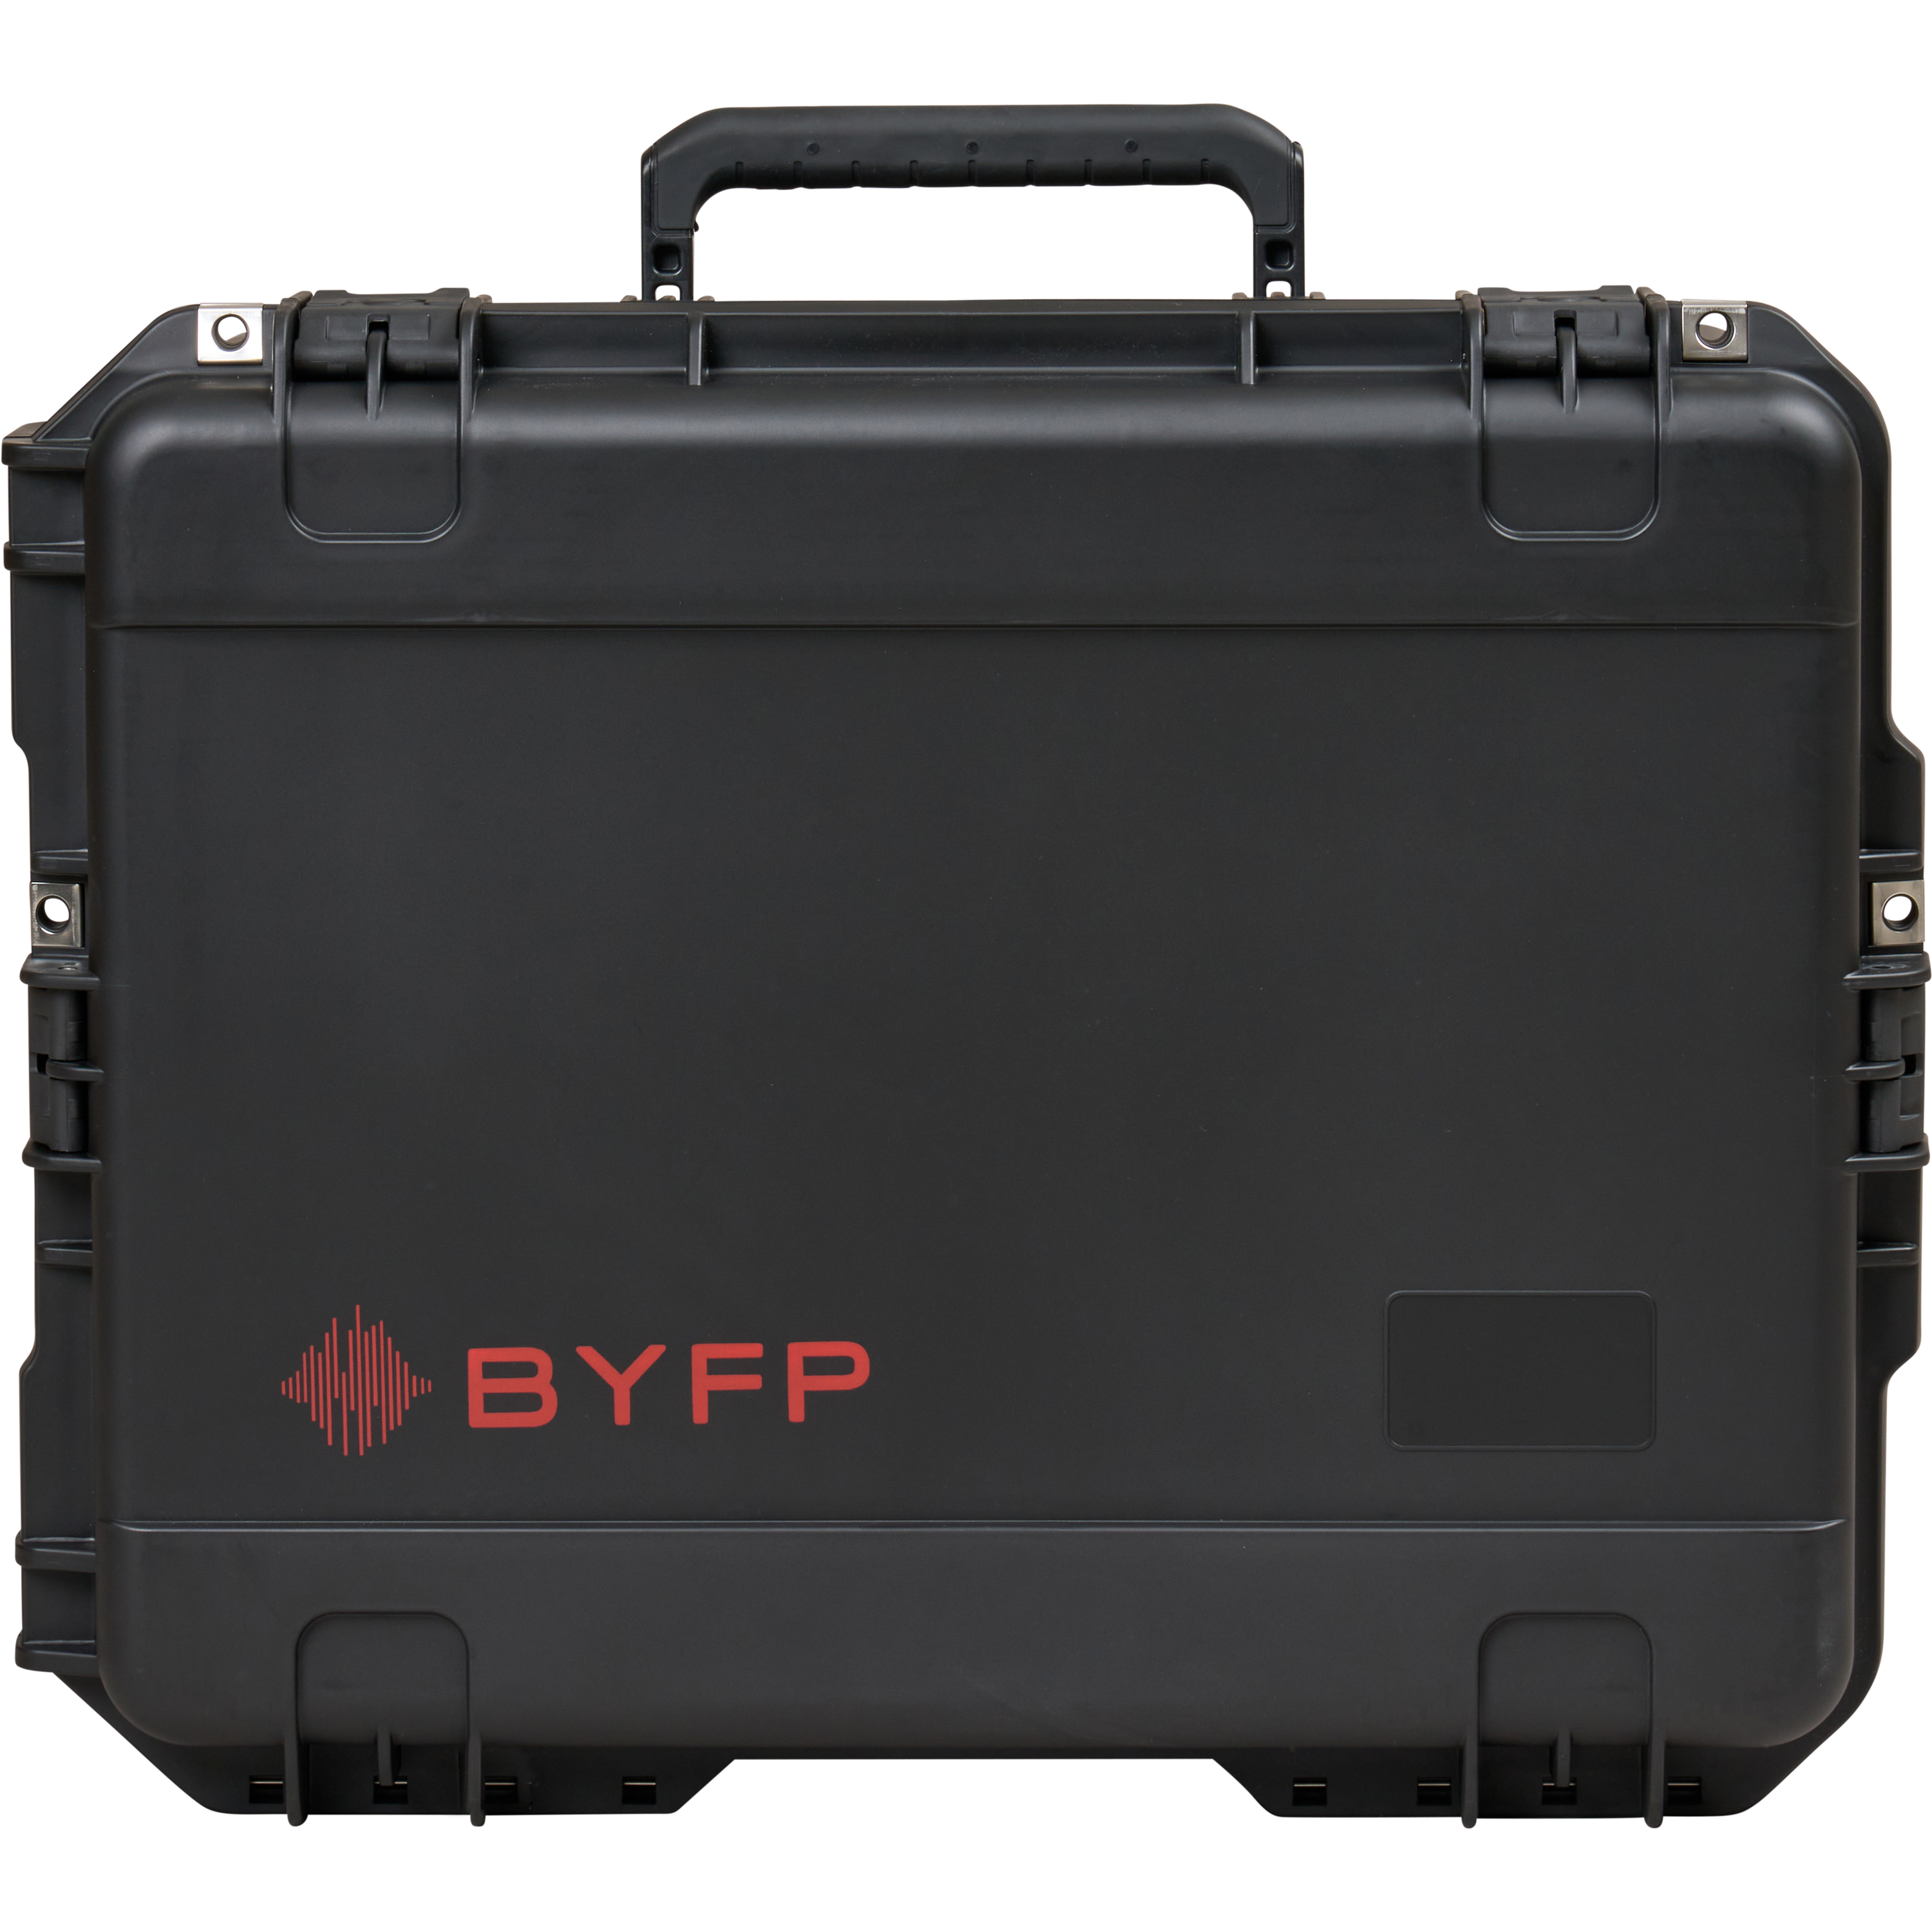 BYFP ipCase for 2x Allen & Heath DX168 Stageboxes